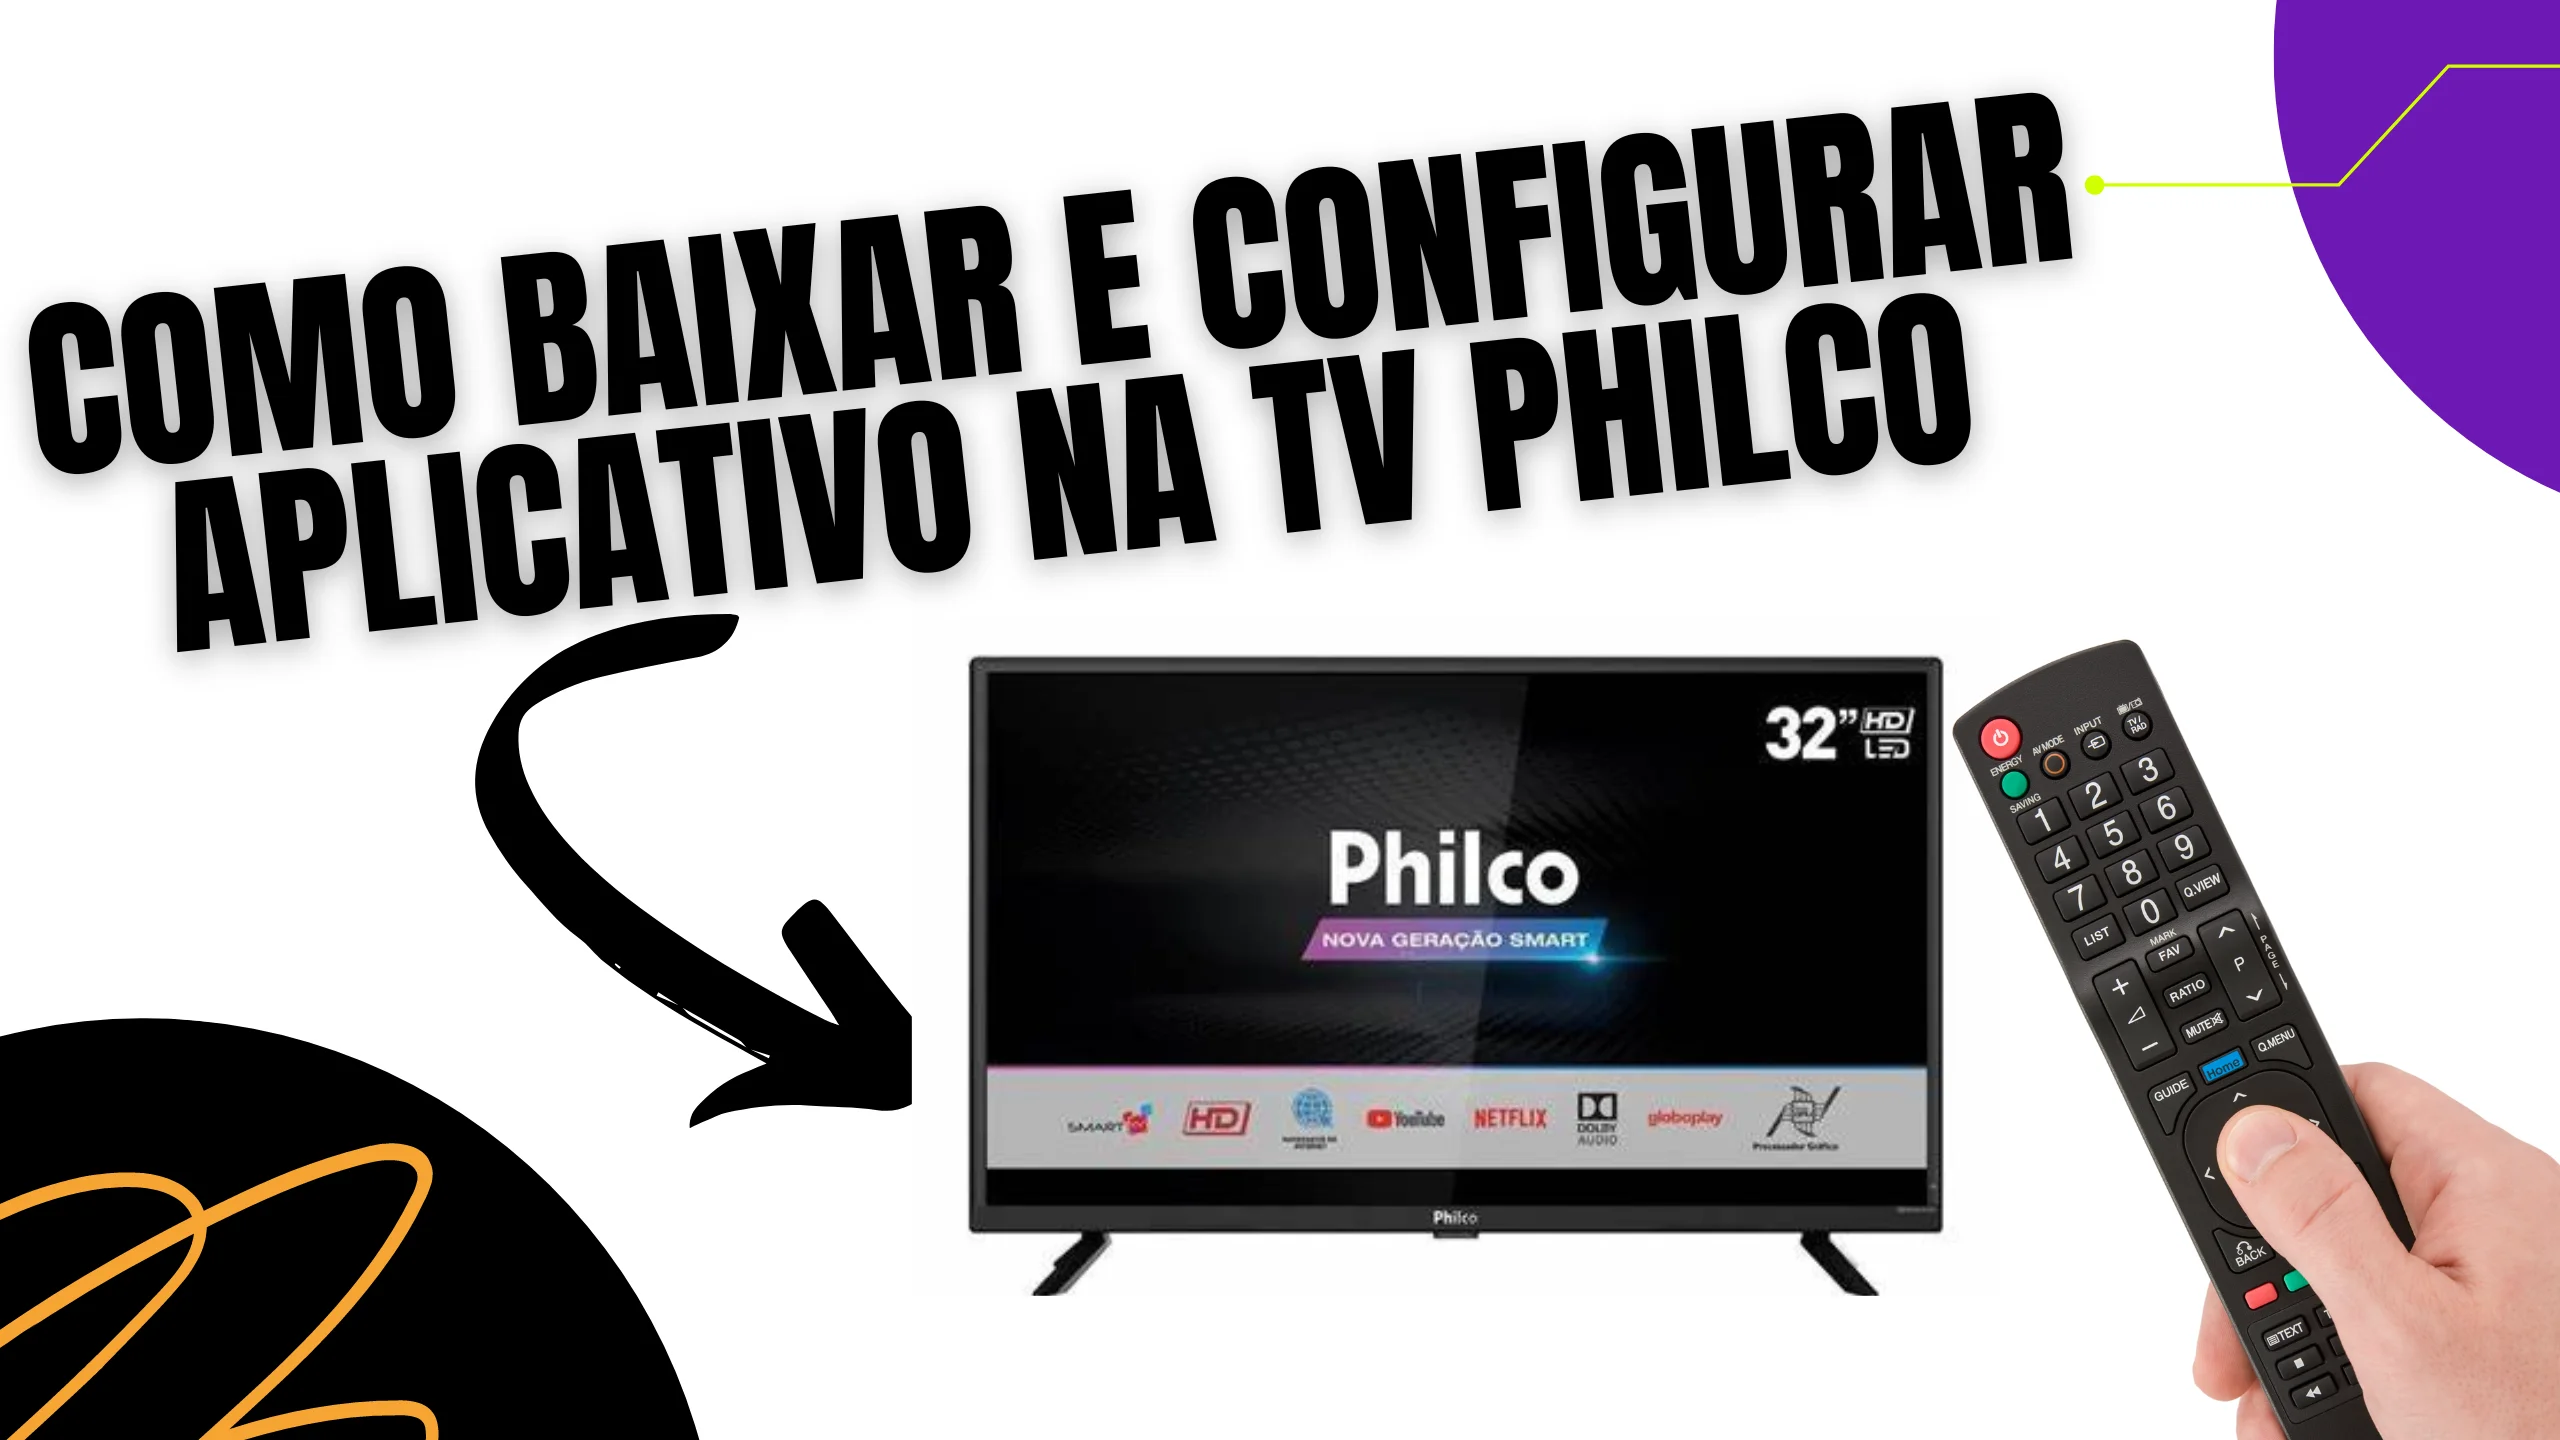 COMO BAIXAR E EXCLUIR APLICATIVO NA TV PHILCO ANDROID